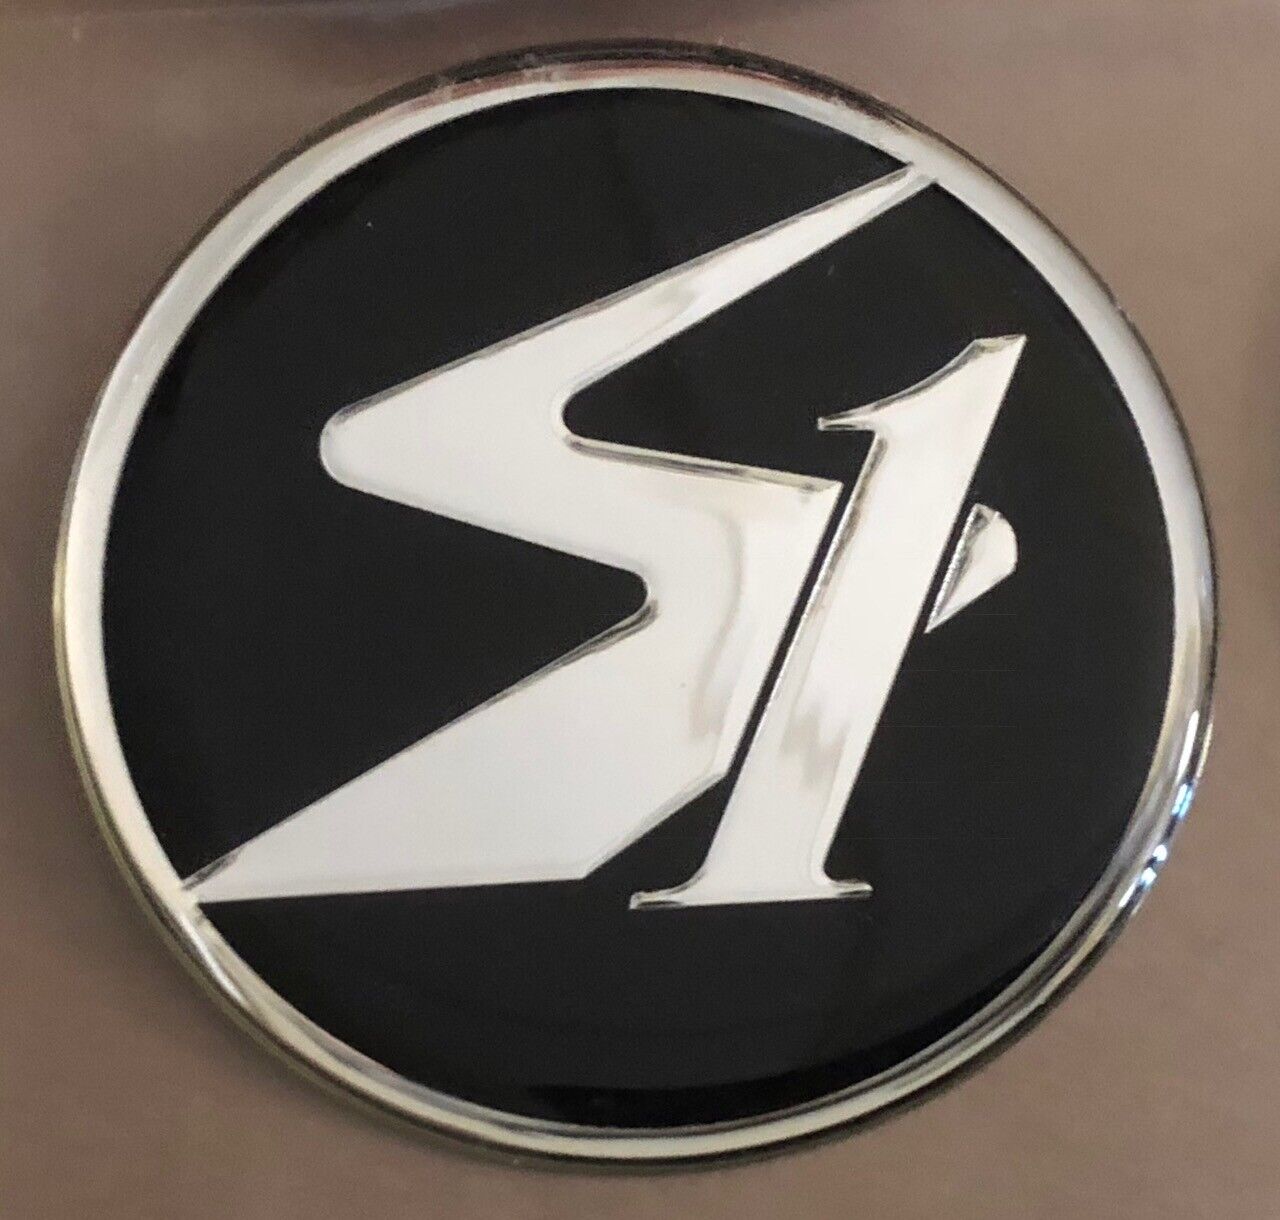 Superformance S1 Roadster dome emblem